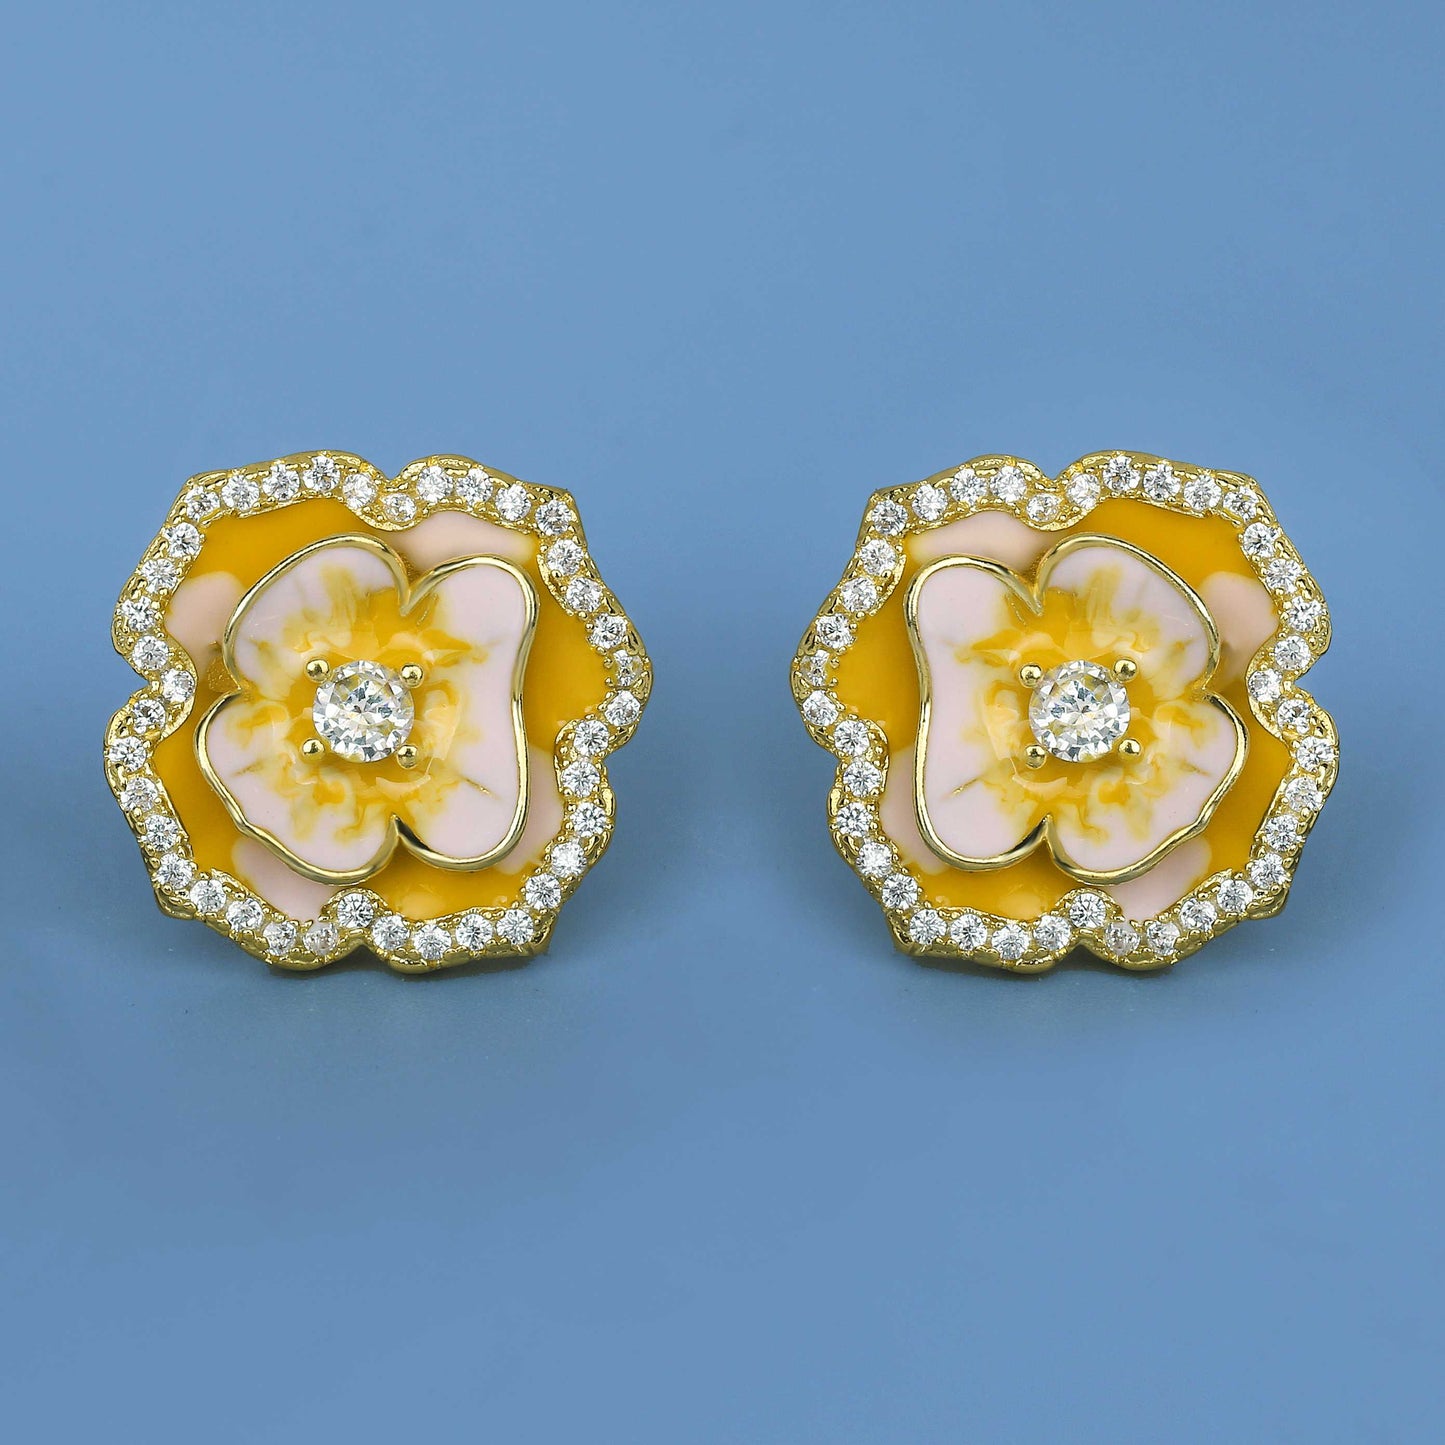 Fashion Yellow Flower Earrings for Women with Handmade Enamel in 925 Silver